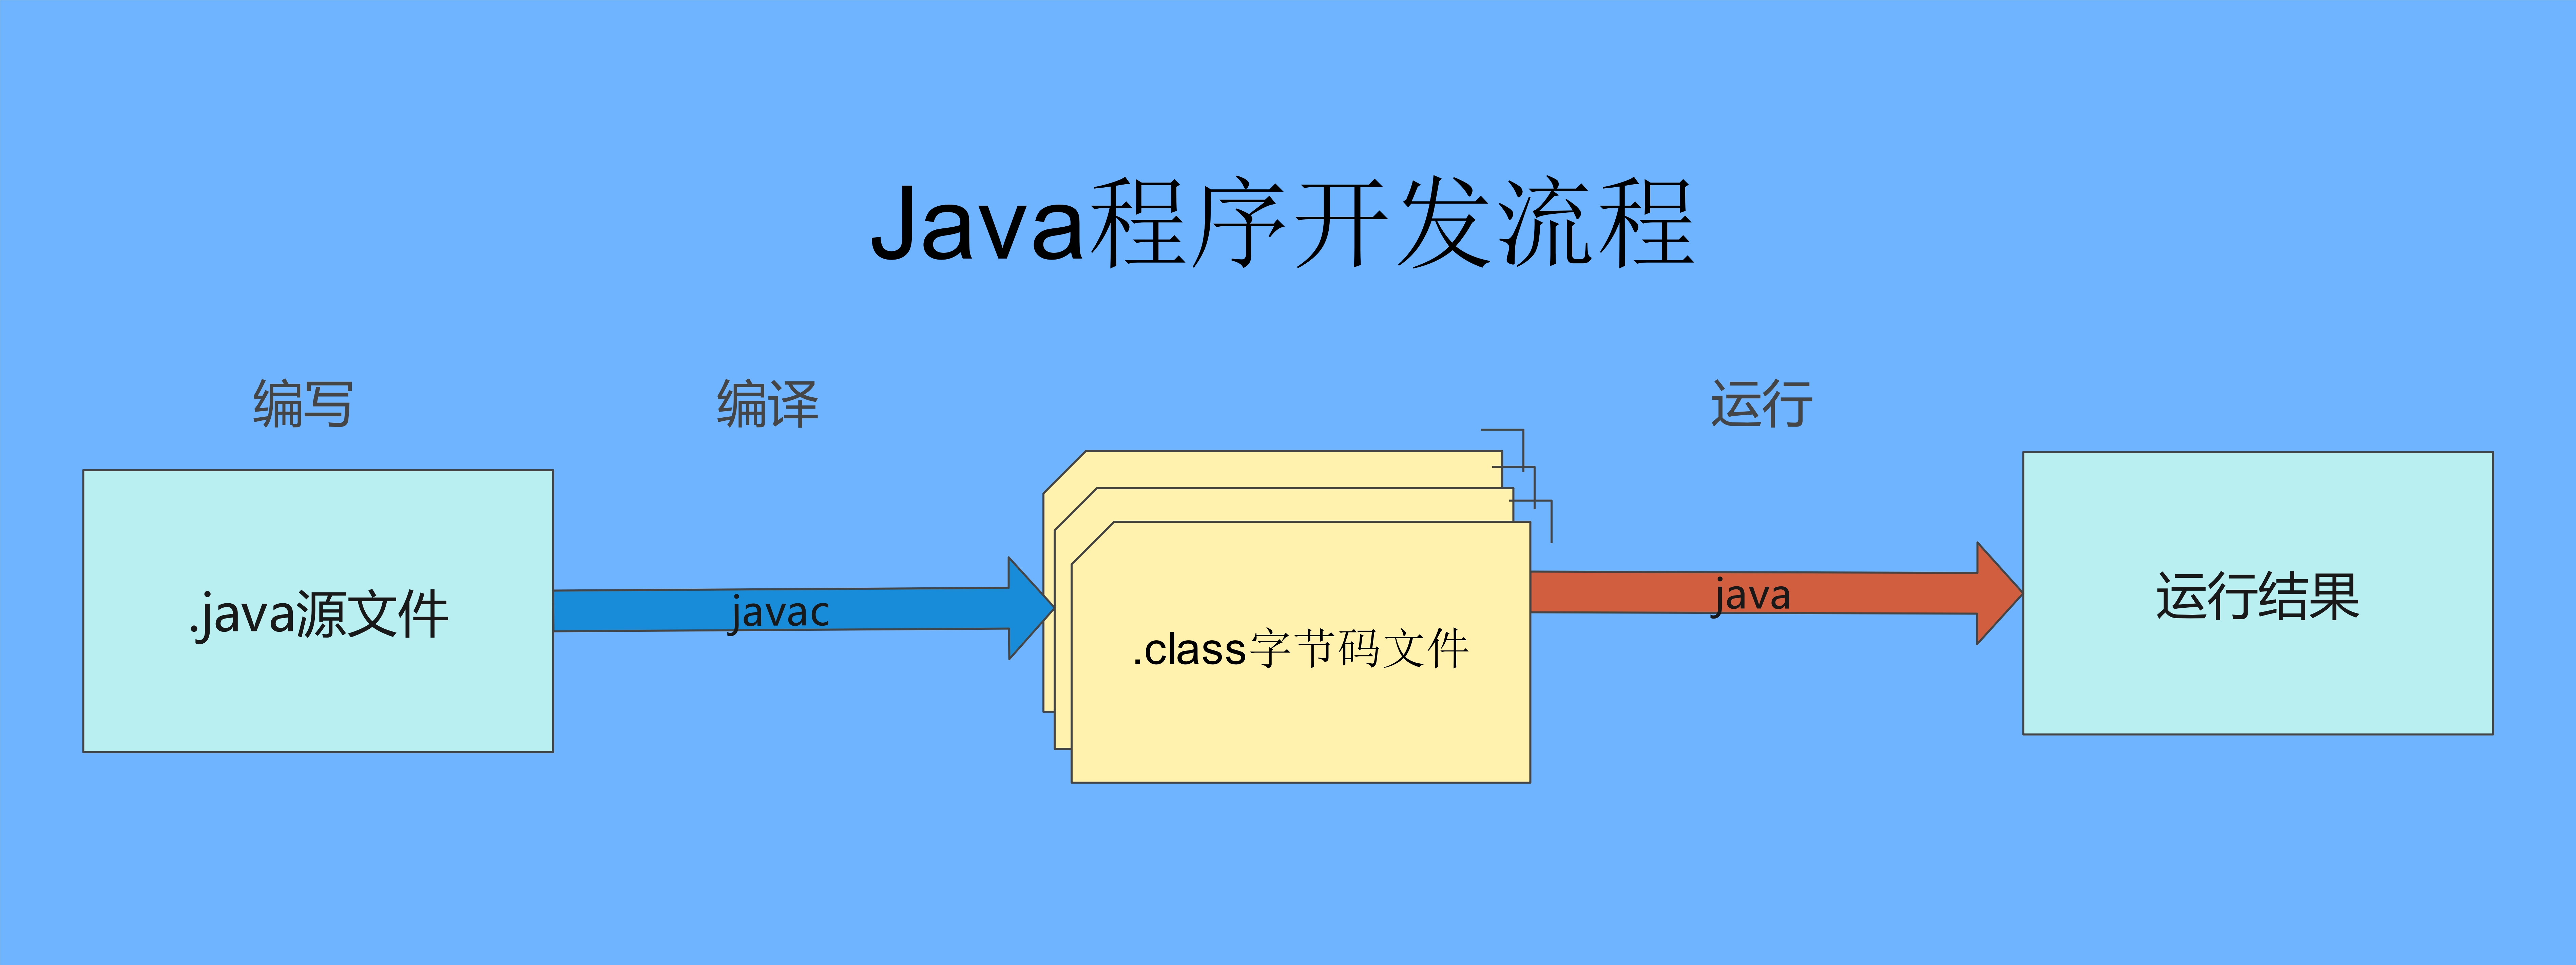 Java程序开发流程